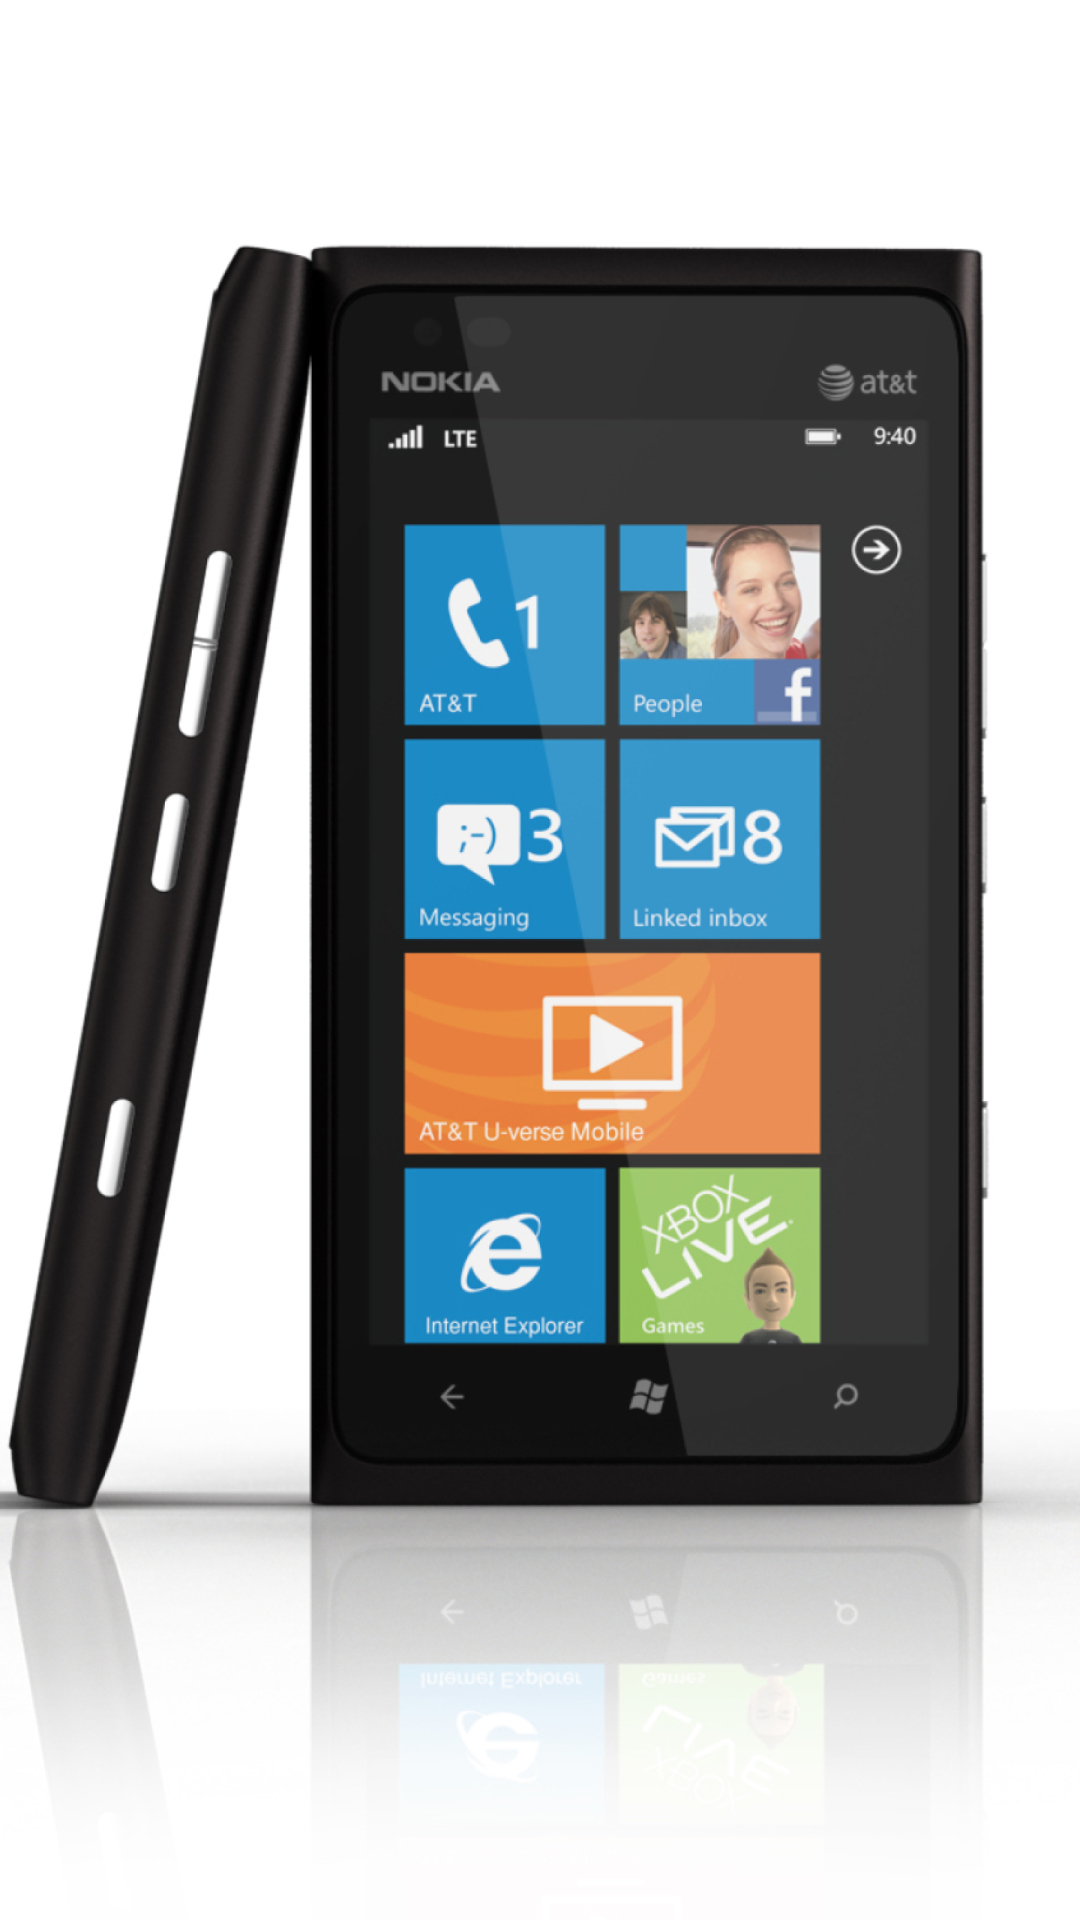 Das Windows Phone Nokia Lumia 900 Wallpaper 1080x1920